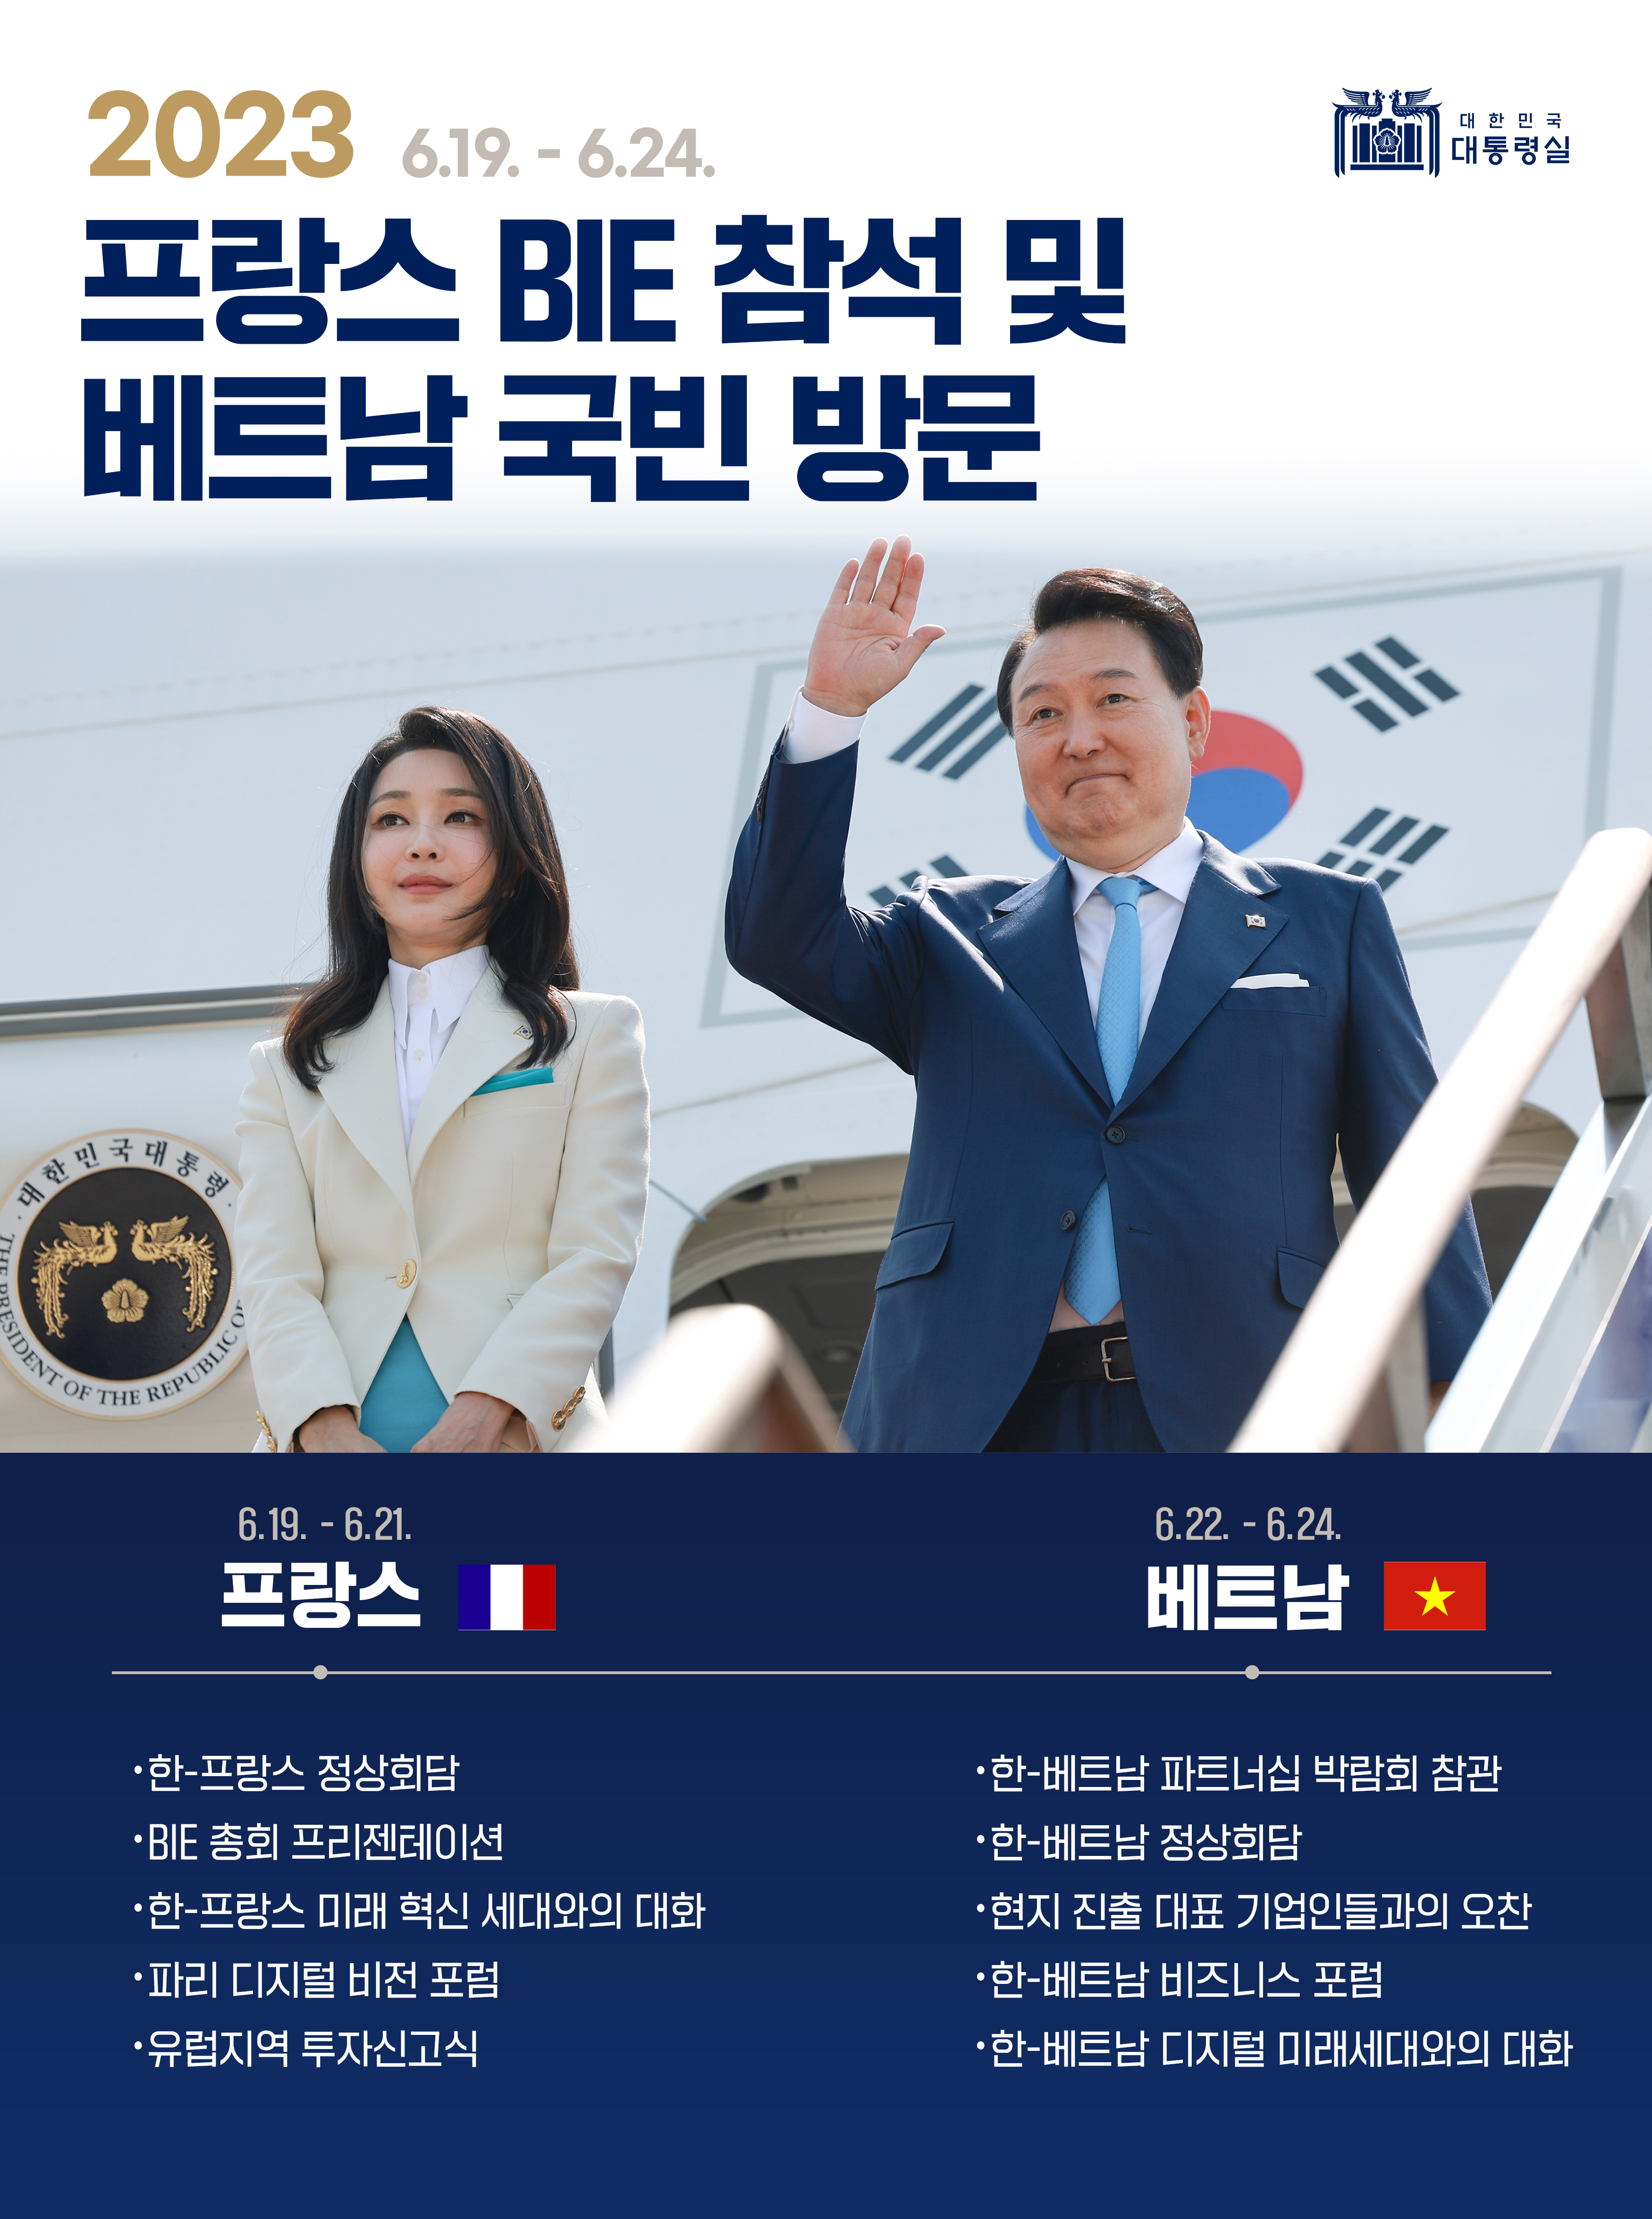 윤석열 대통령, 프랑스 BIE 참석 및 베트남 국빈 방문